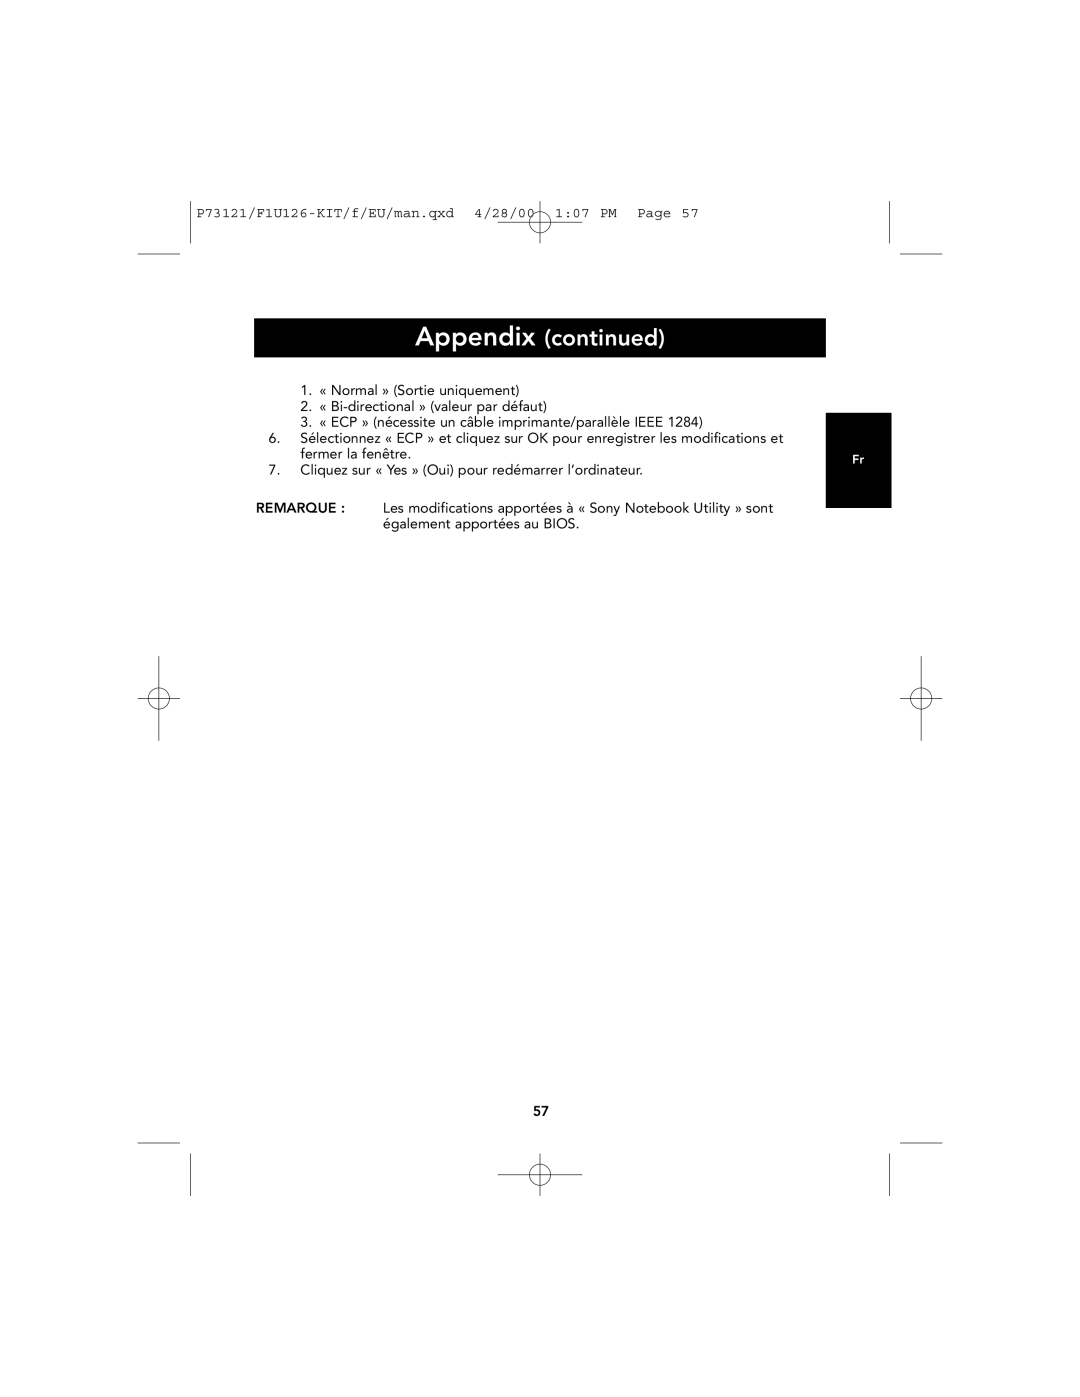 Belkin user manual Appendix continued, P73121/F1U126-KIT/f/EU/man.qxd 4/28/00 107 PM Page 